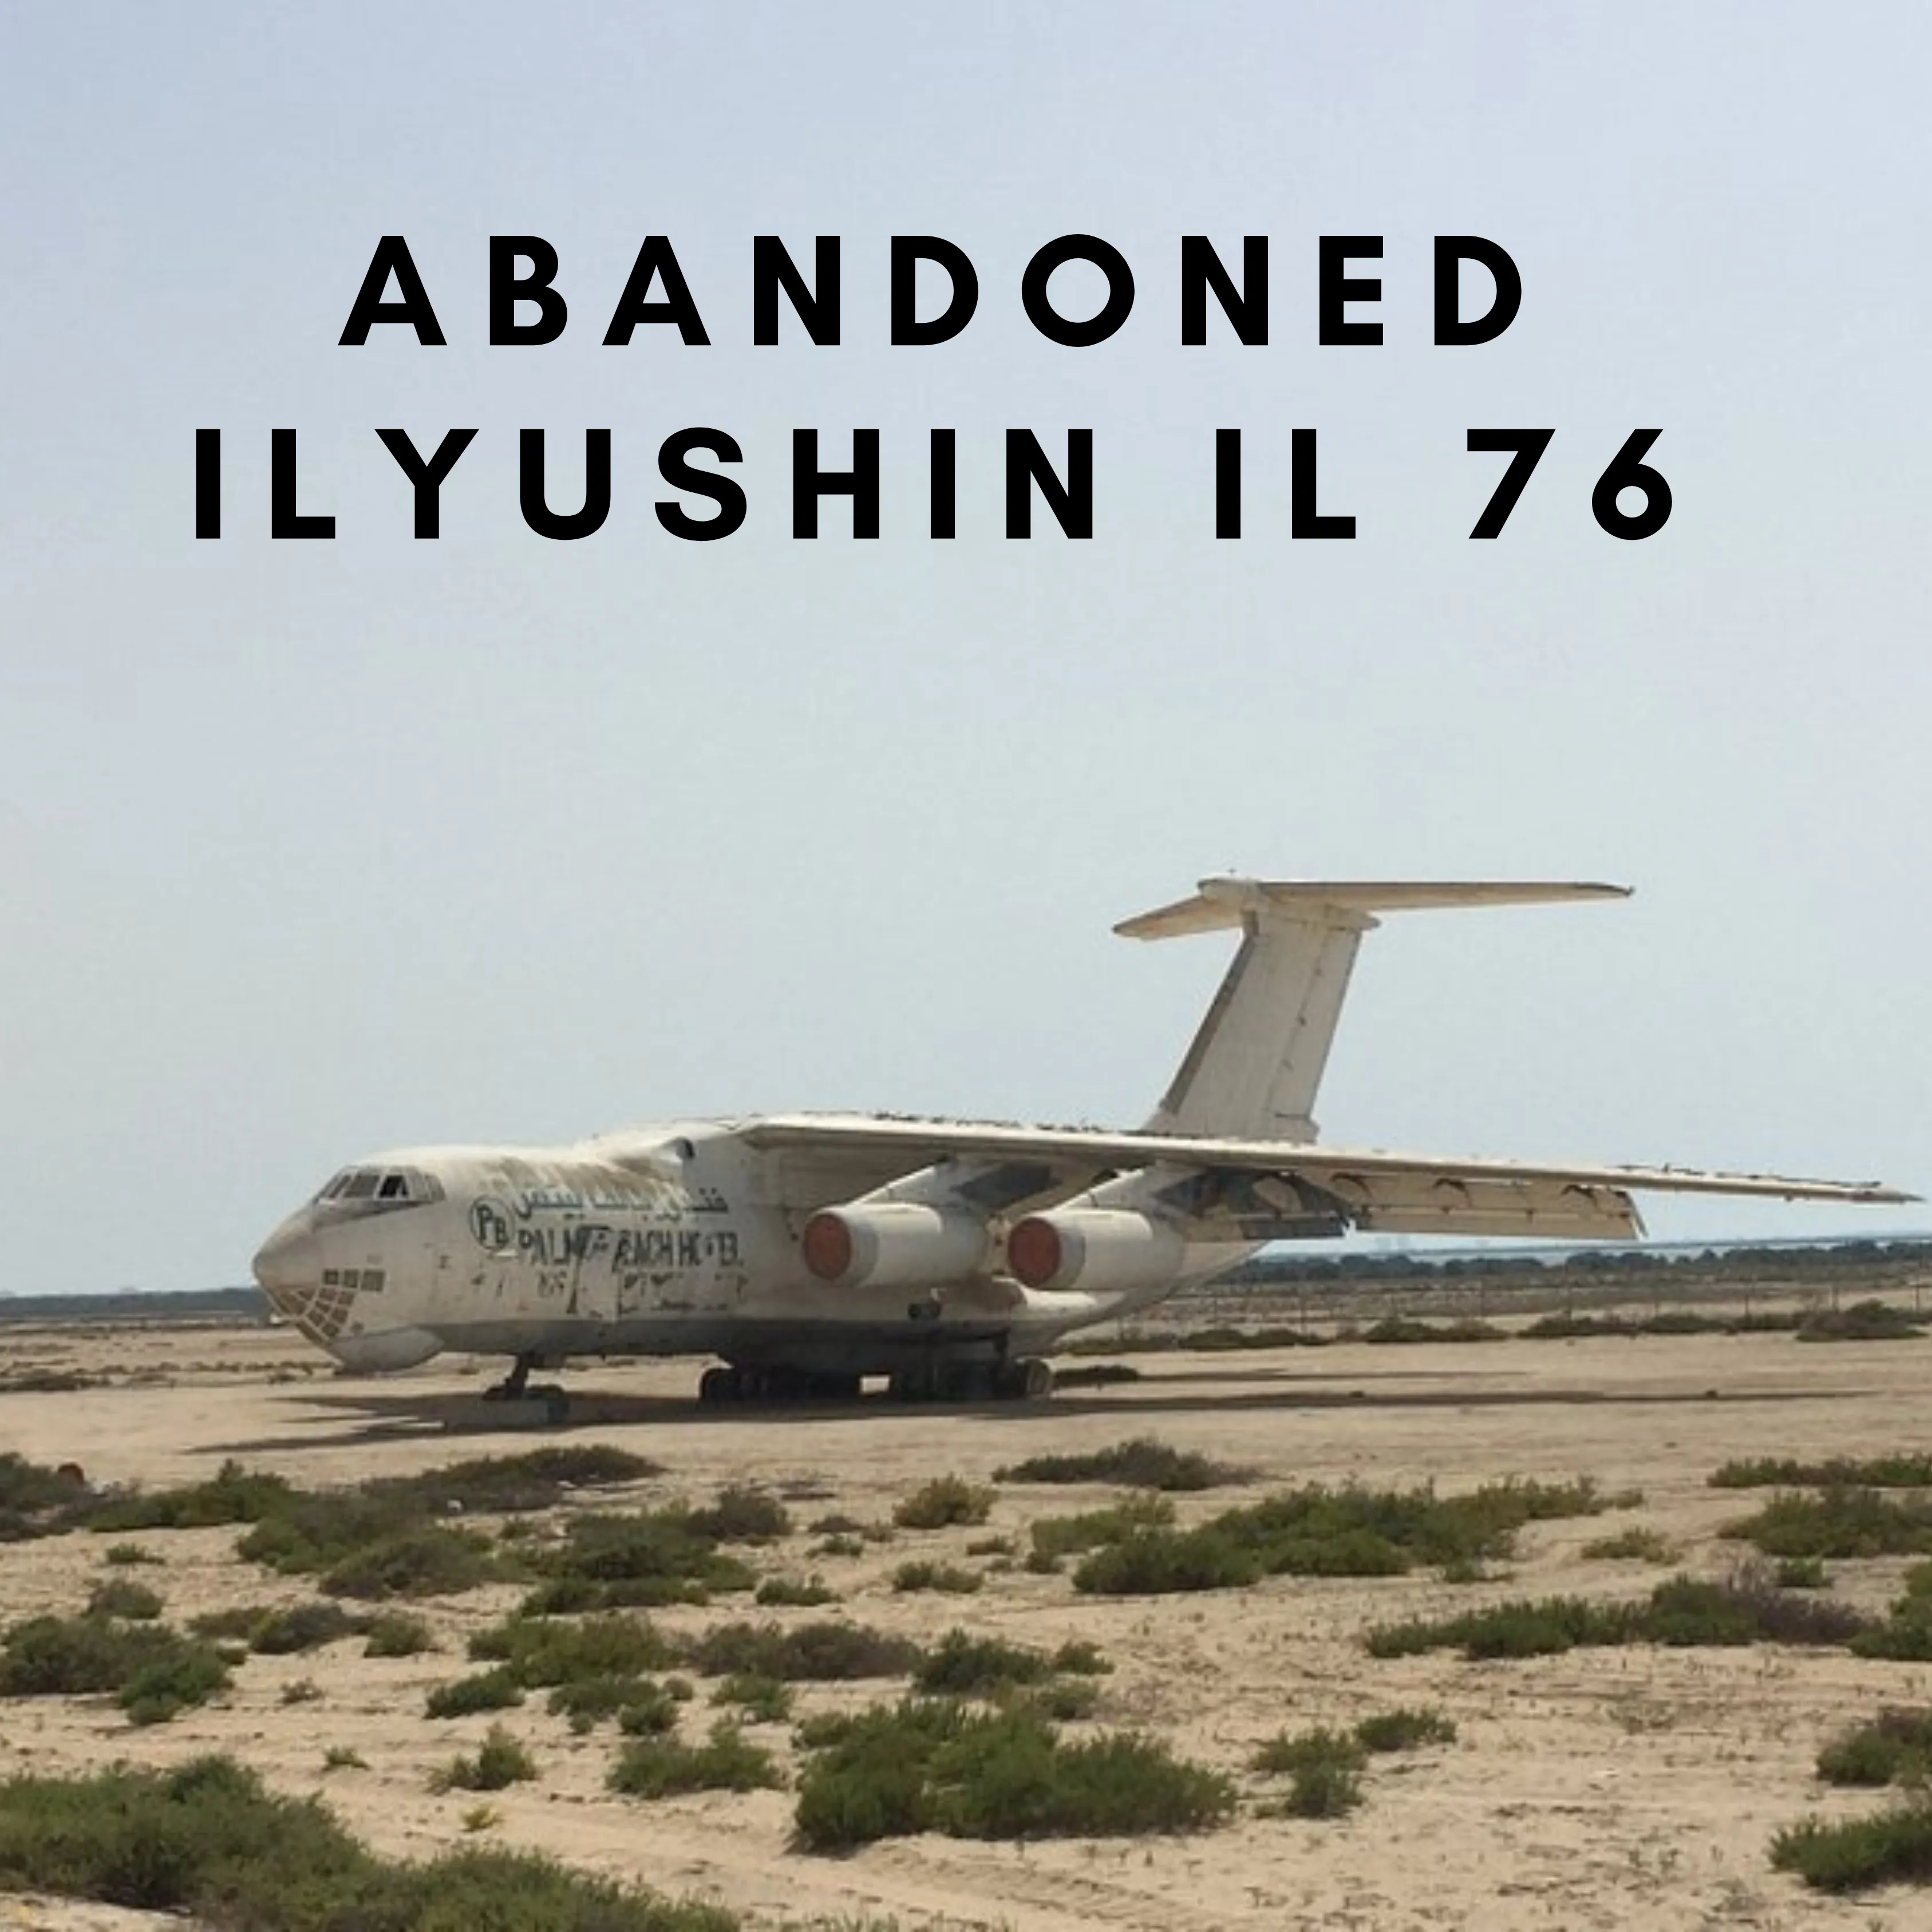 ABONDONED ILYUSHIN IL 76